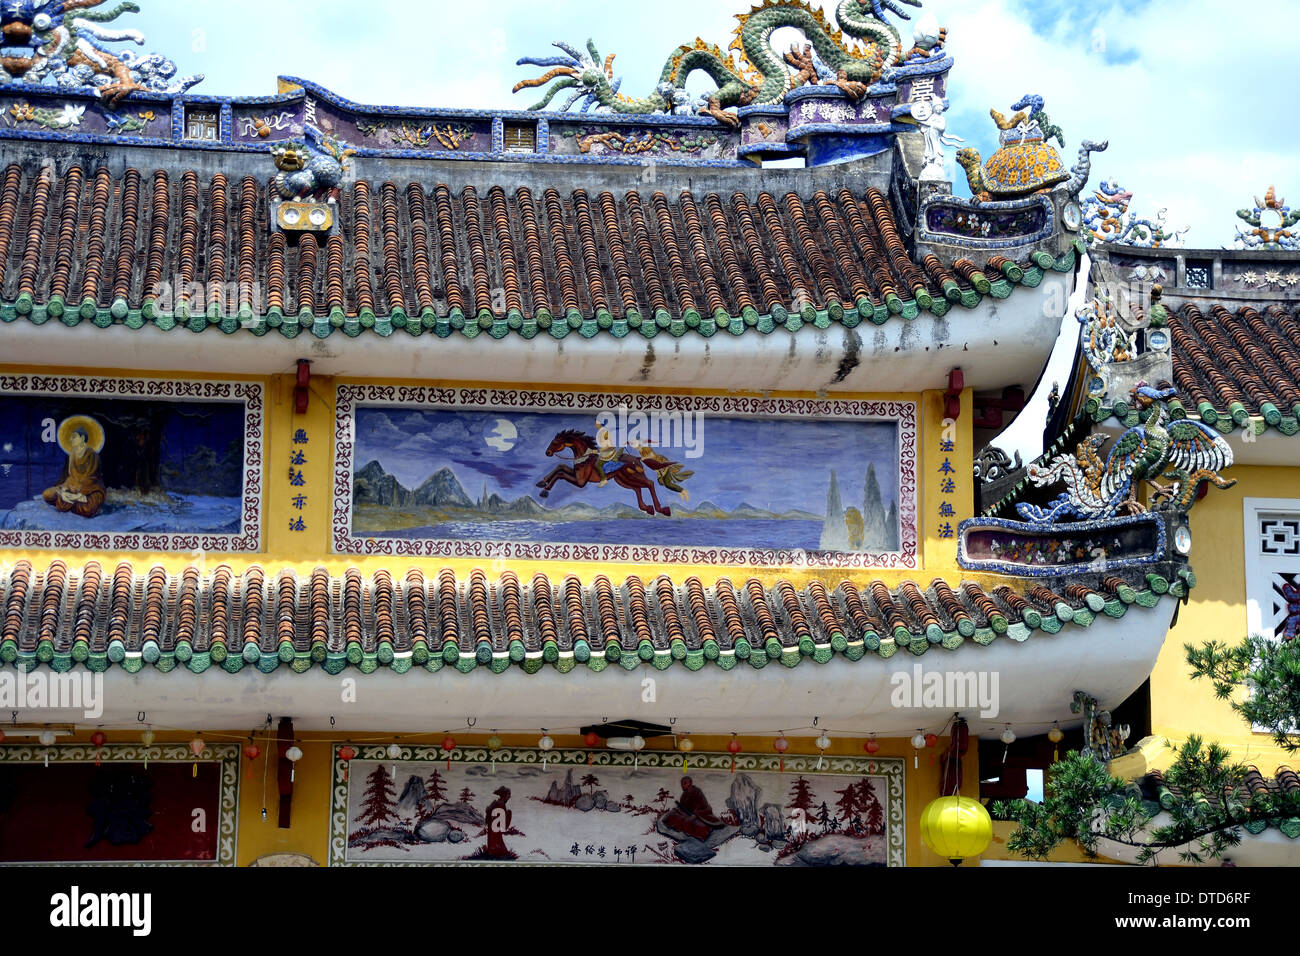 Chinesische Tempel-Architektur in Hoi An Vietnam Stockfoto